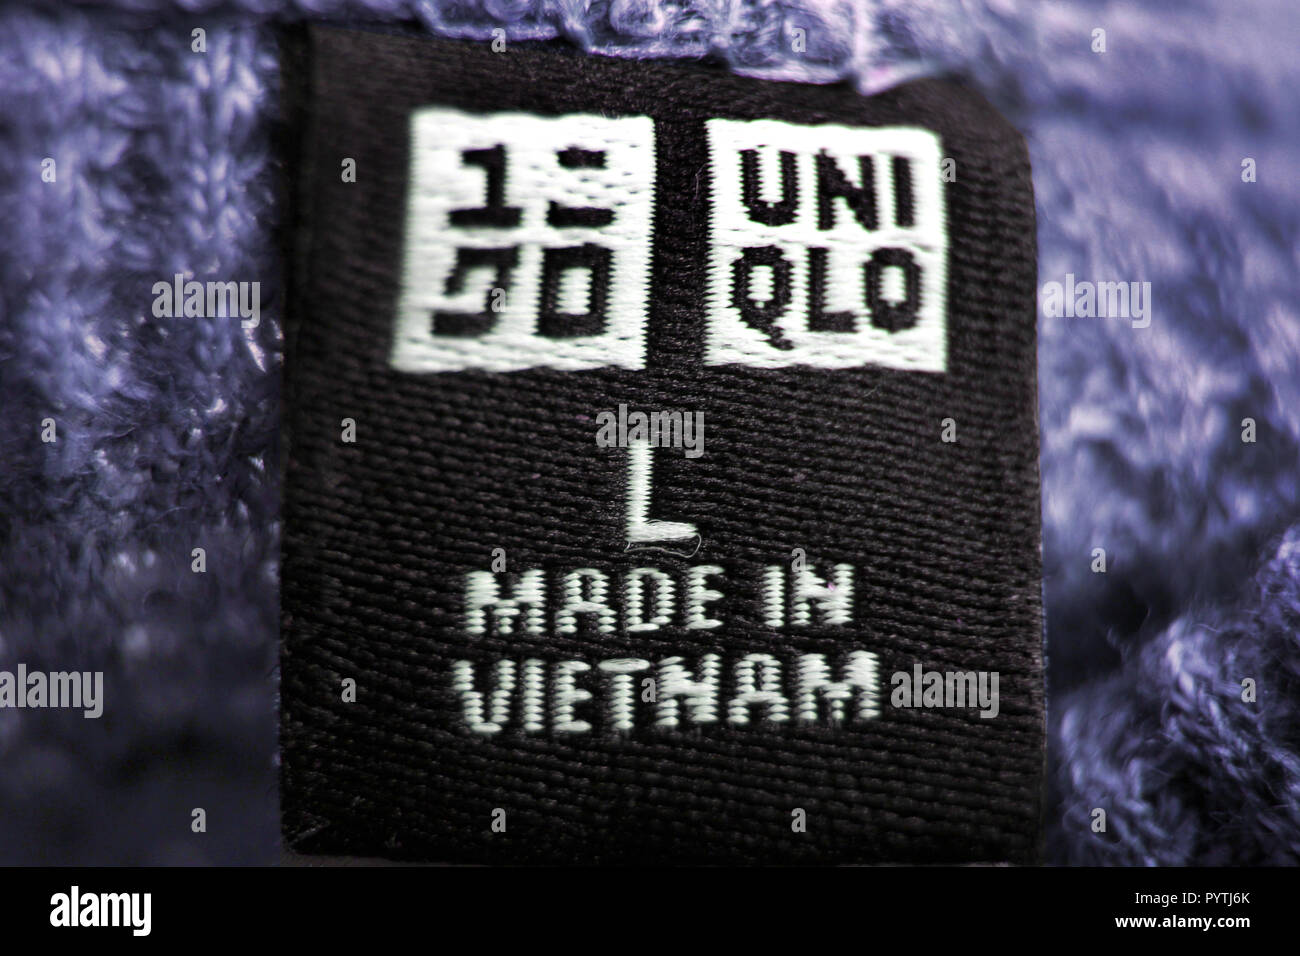 Dettaglio dell'etichetta con il logo (Made in Vietnam) sui vestiti dal  rivenditore giapponese Uniqlo Foto stock - Alamy